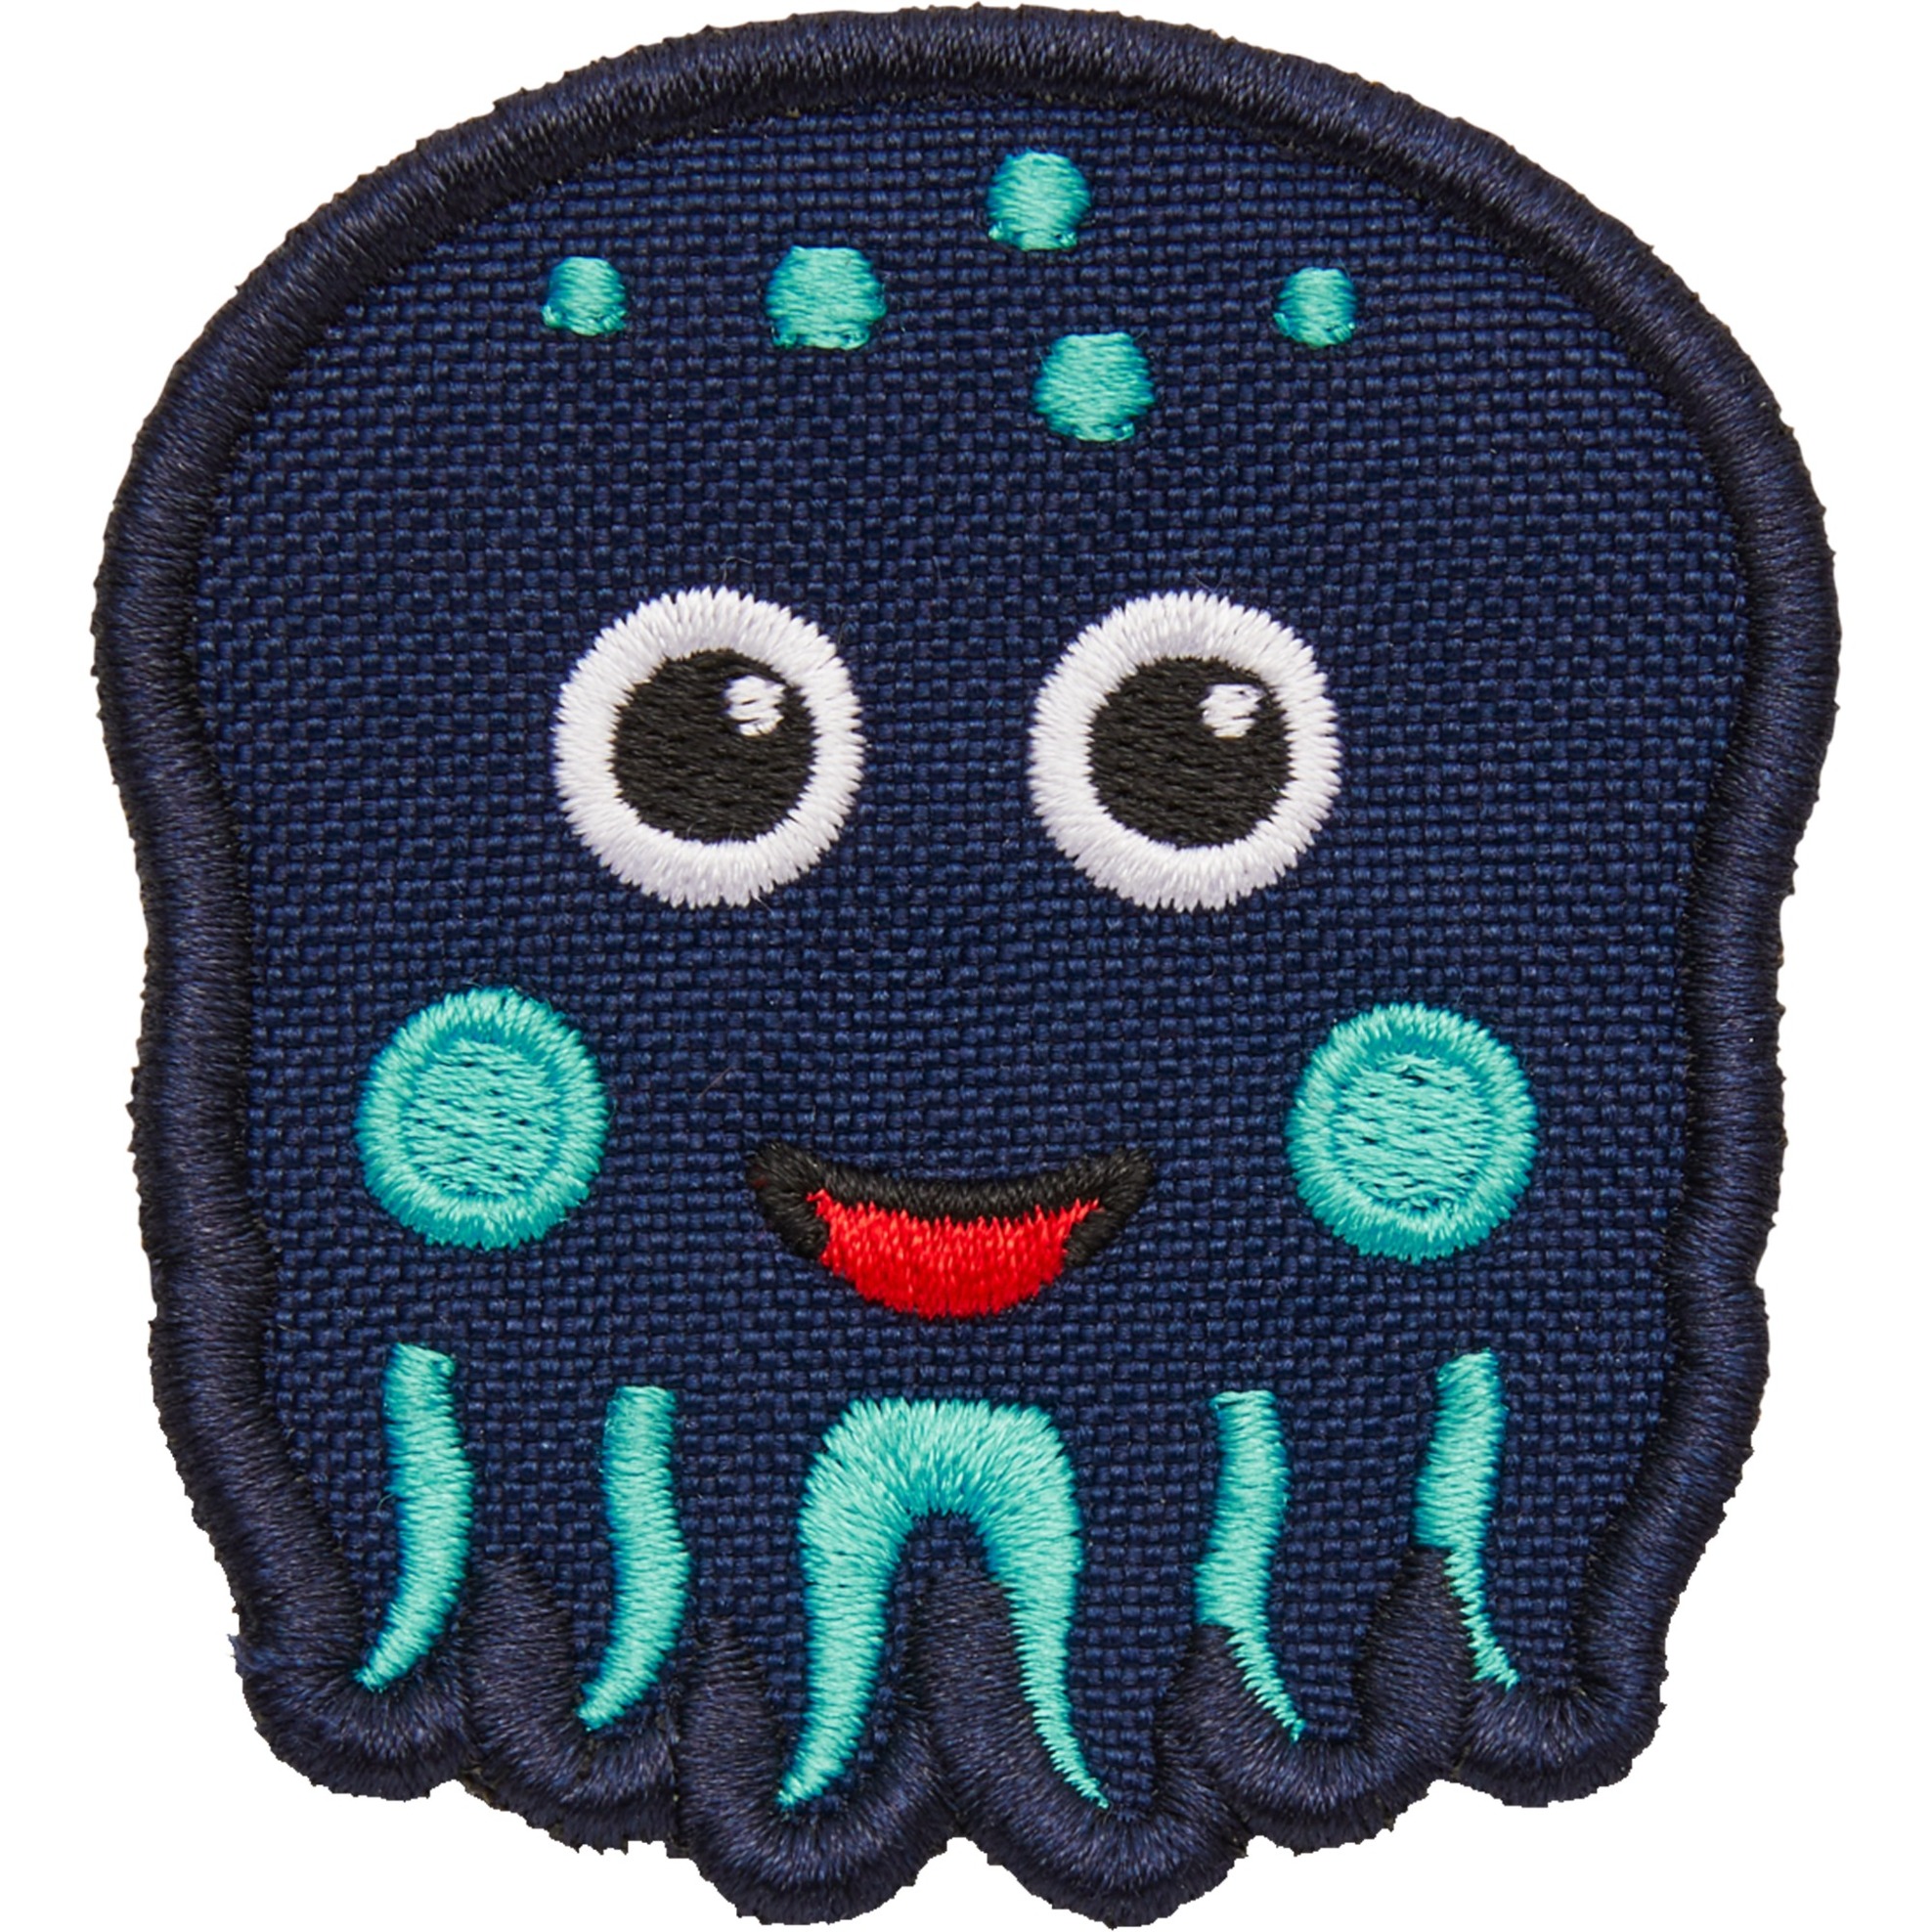 Image of Alternate - Klett-Badge Oktopus, Patch online einkaufen bei Alternate